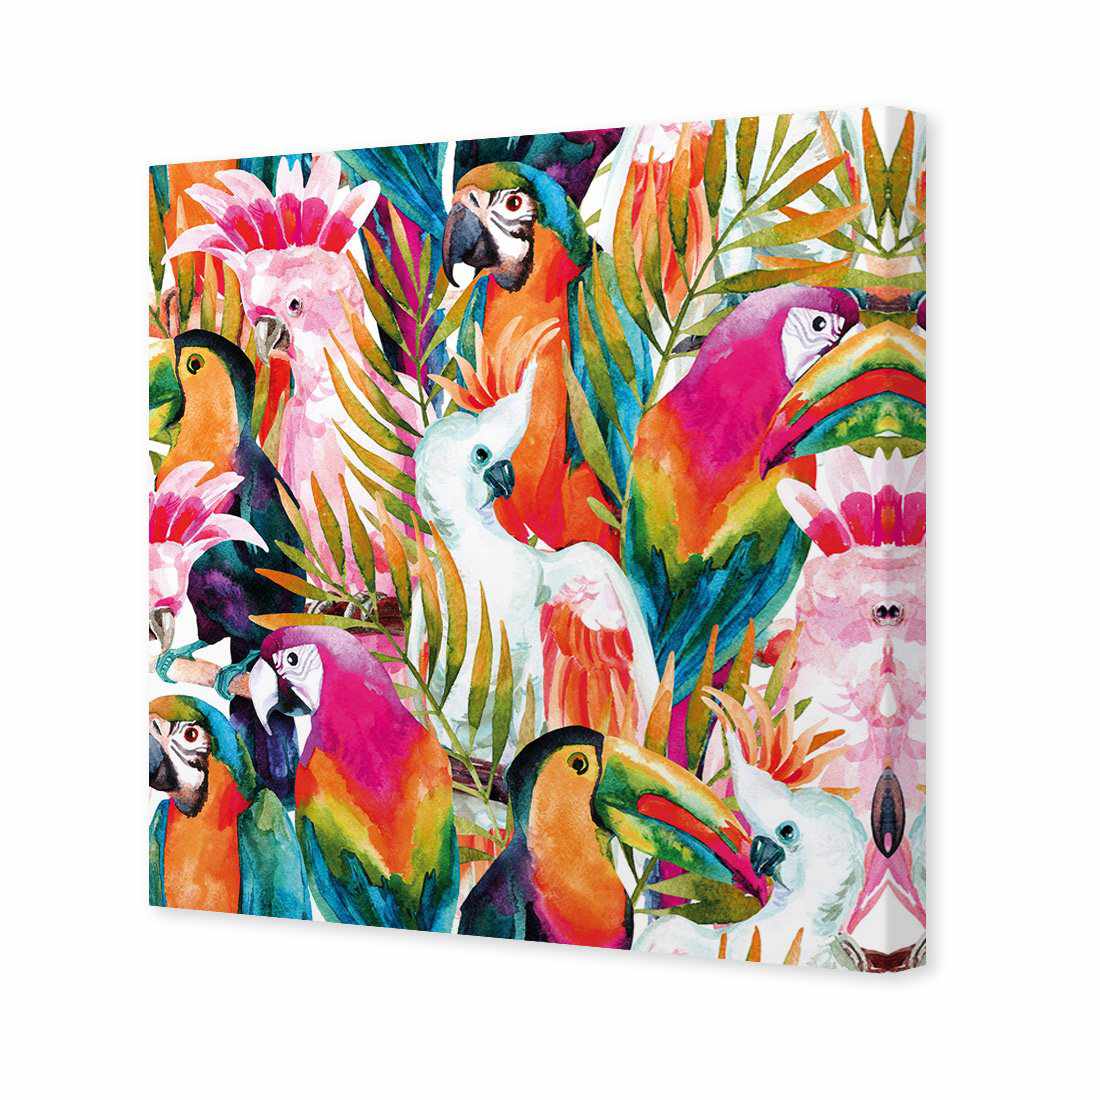 Parrots & Palms, Square Canvas Art-Canvas-Wall Art Designs-30x30cm-Canvas - No Frame-Wall Art Designs